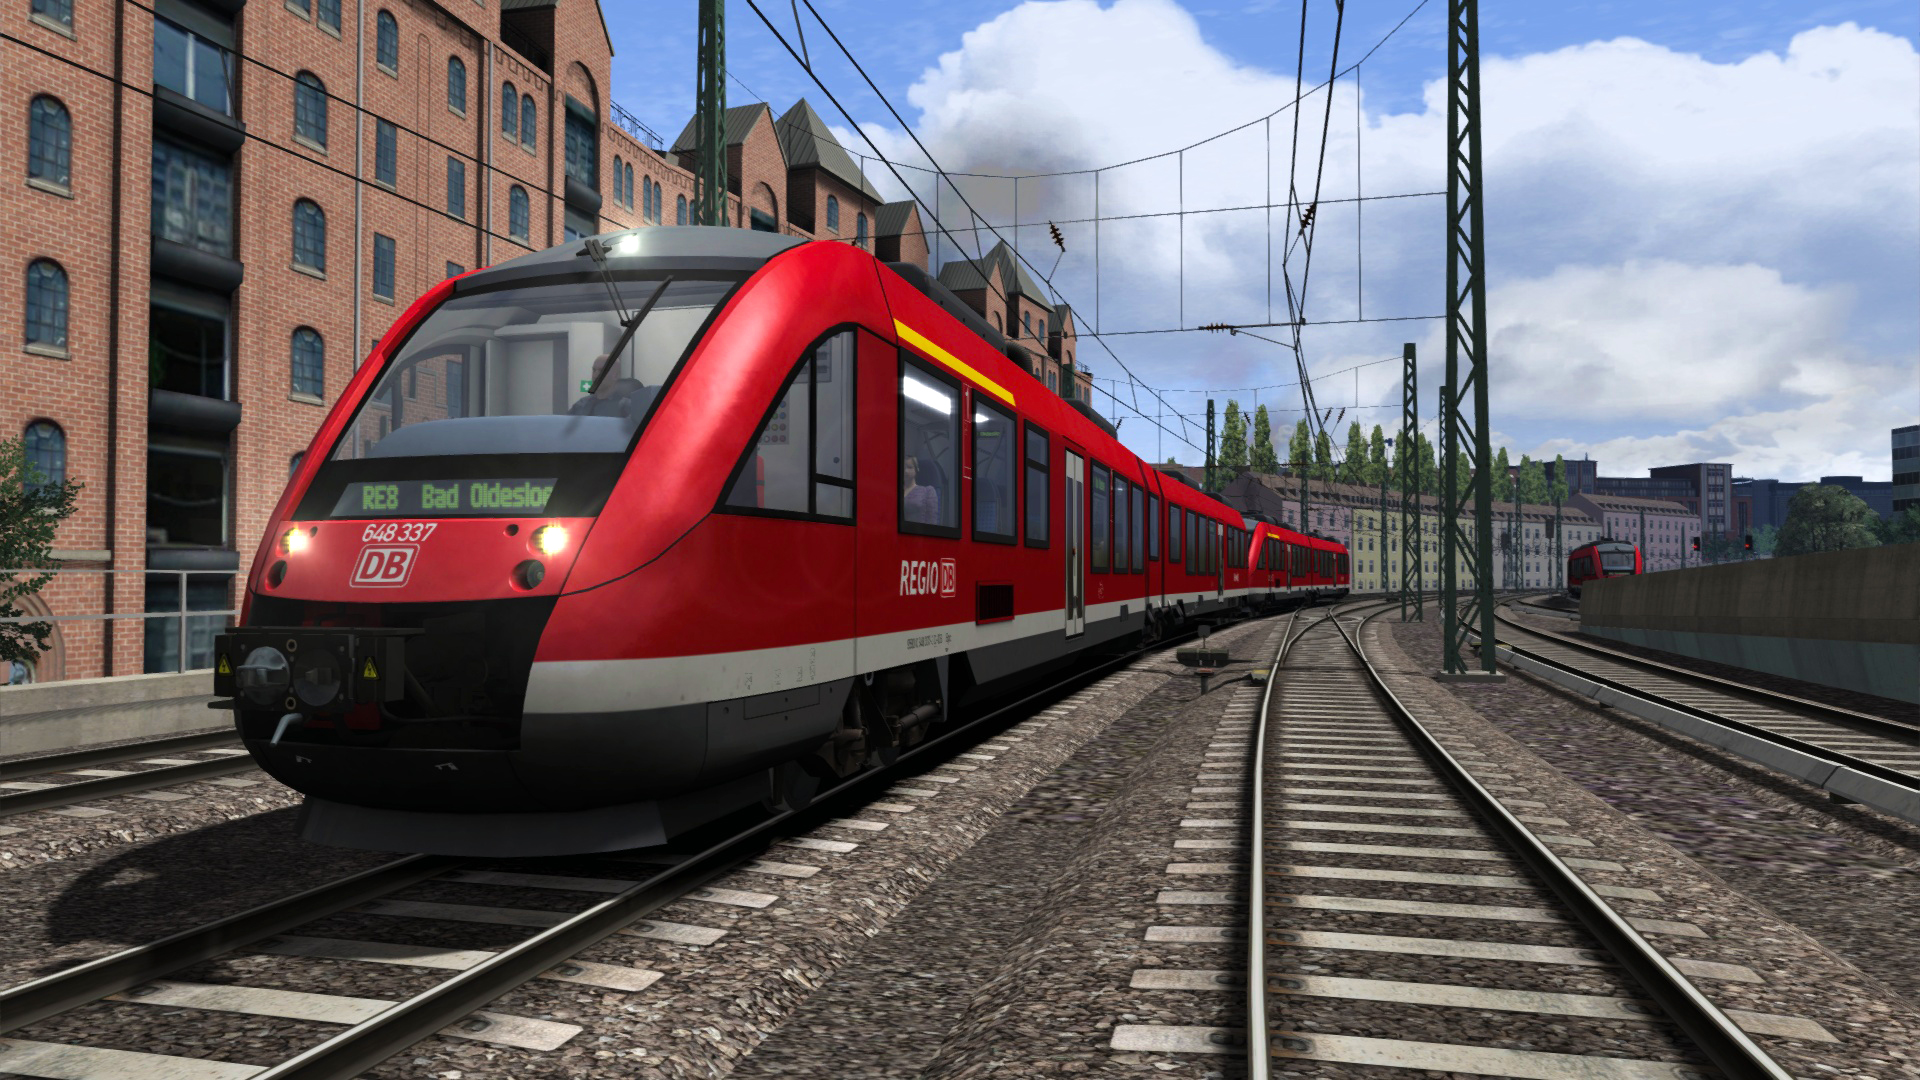 Train Simulator Classic - DB BR 648 Loco Add-On DLC Steam CD Key 0.43 $